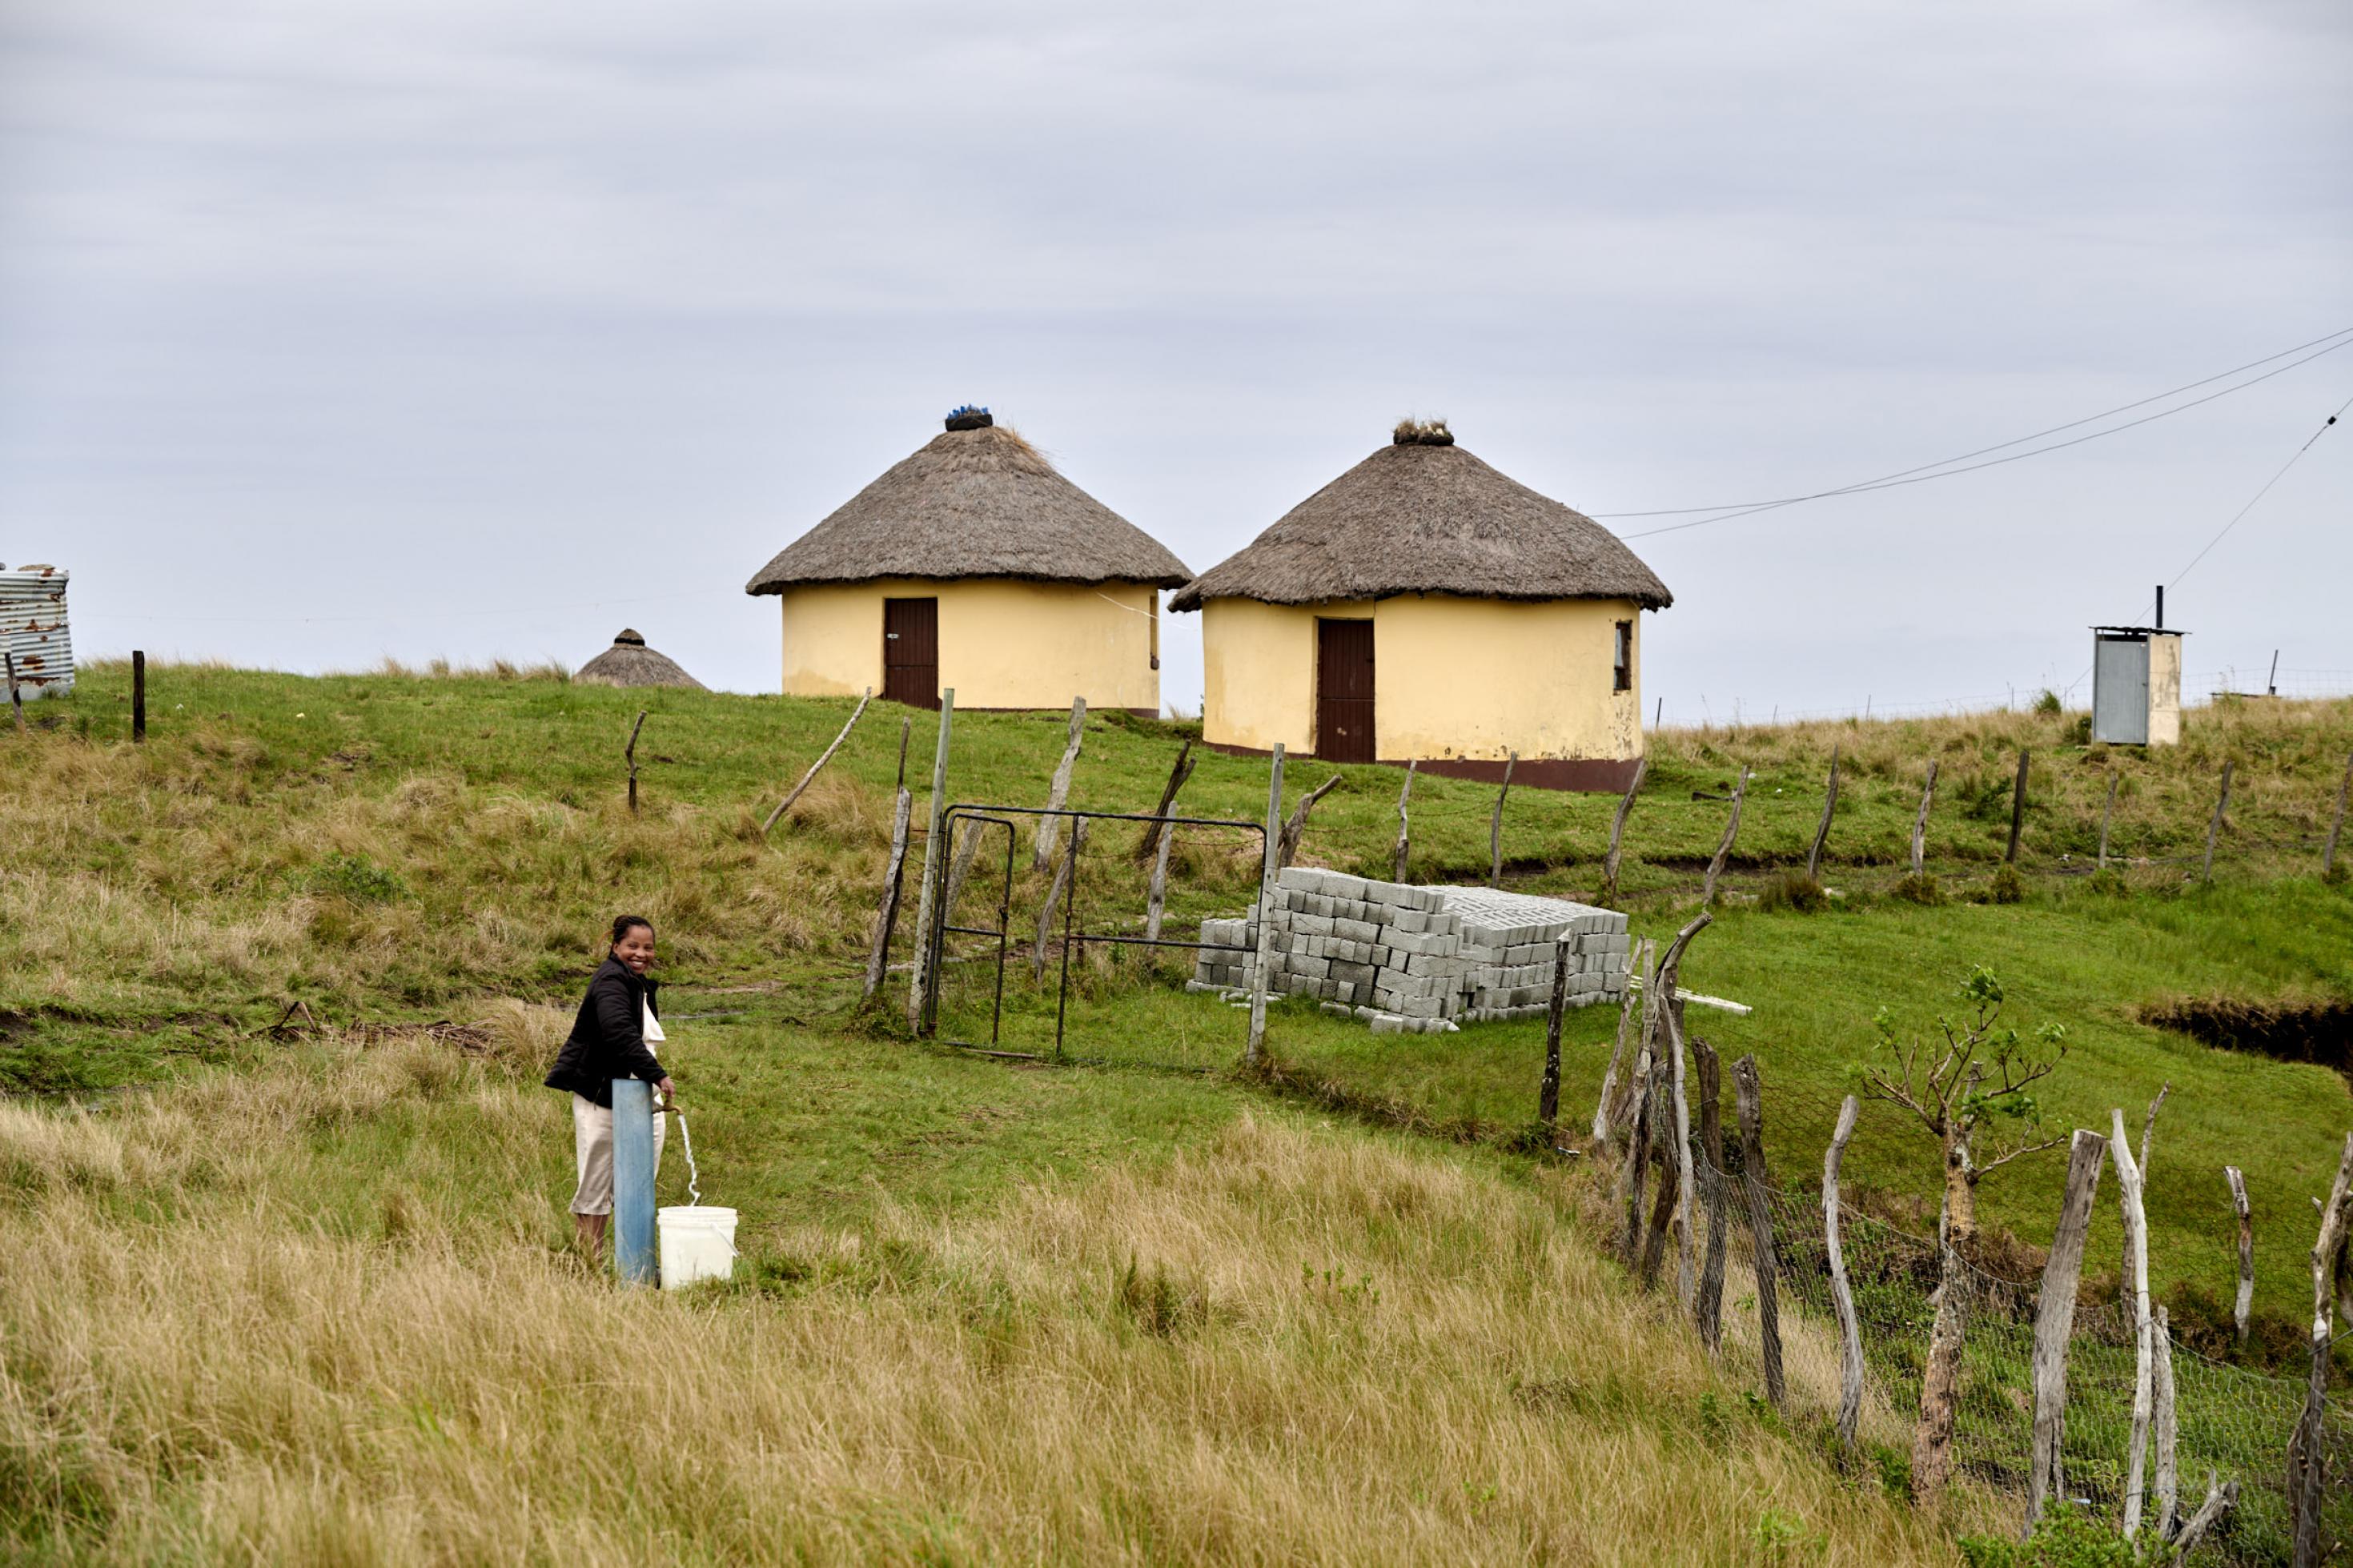 Vor zwei Rundhäusern im Dorf füllt eine Frau Wasser aus dem kommunalen Hahn in einen Eimer